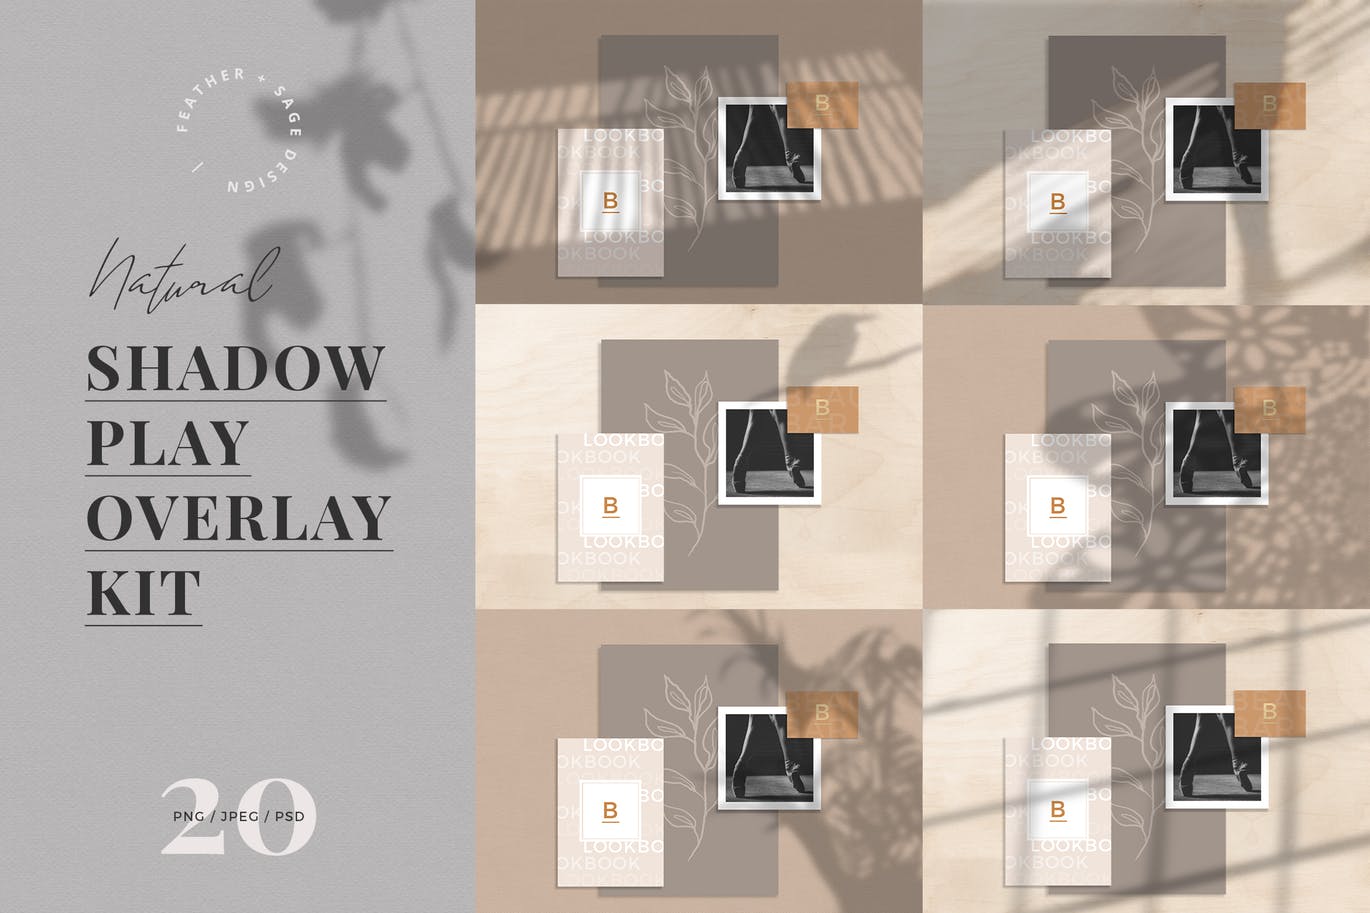 自然植物阴影高清第一素材精选背景设计素材包 Natural Shadow Play Overlay Kit插图